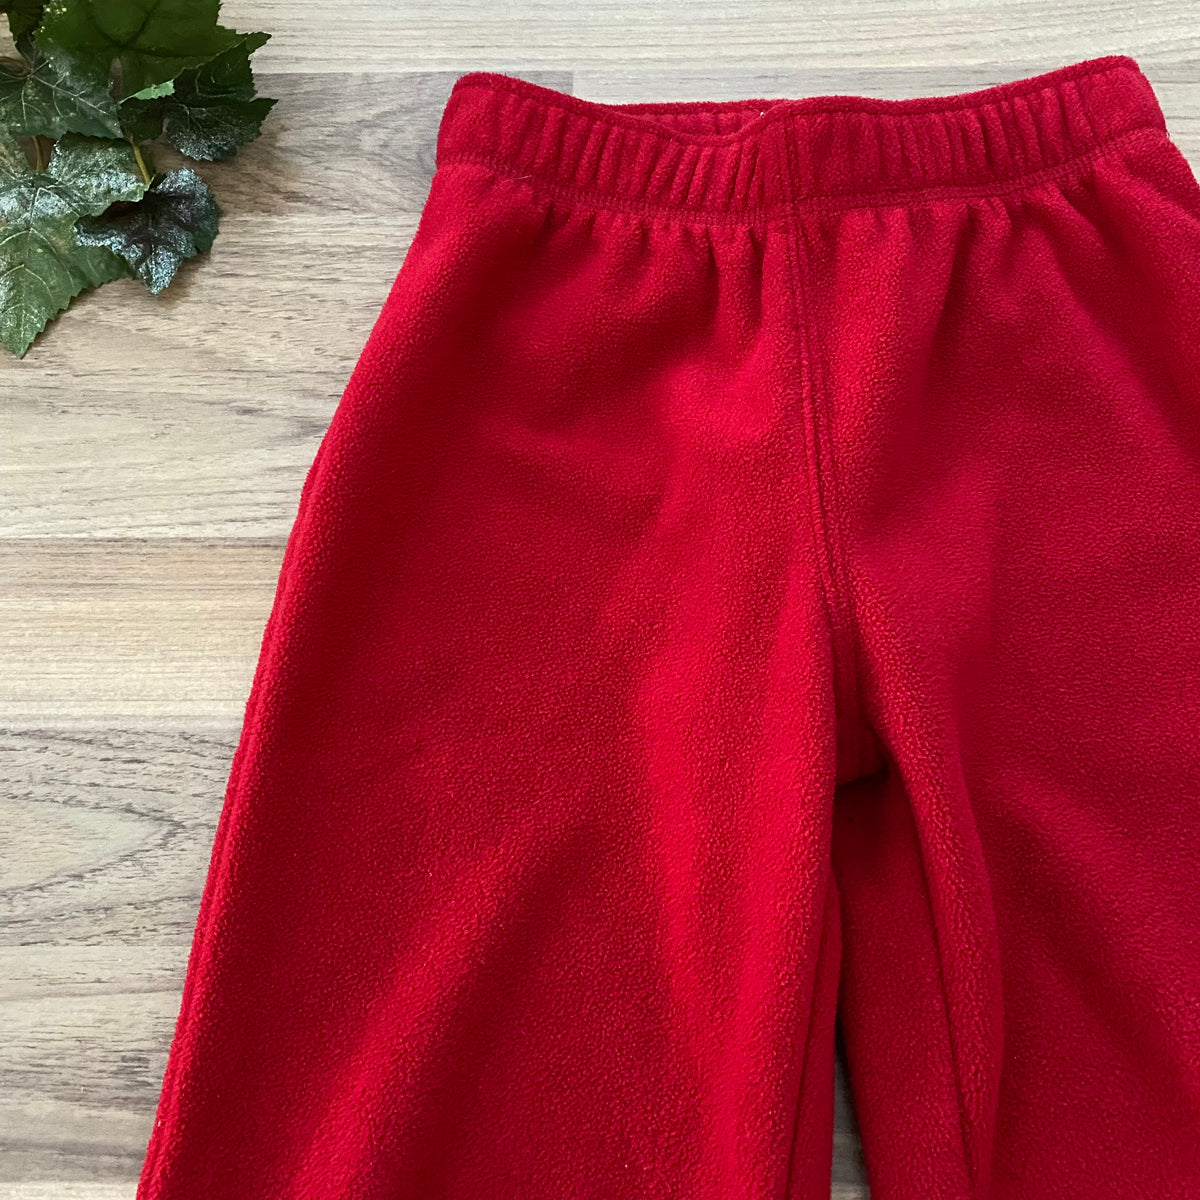 Fleece Pants (Girls Size 5-6)